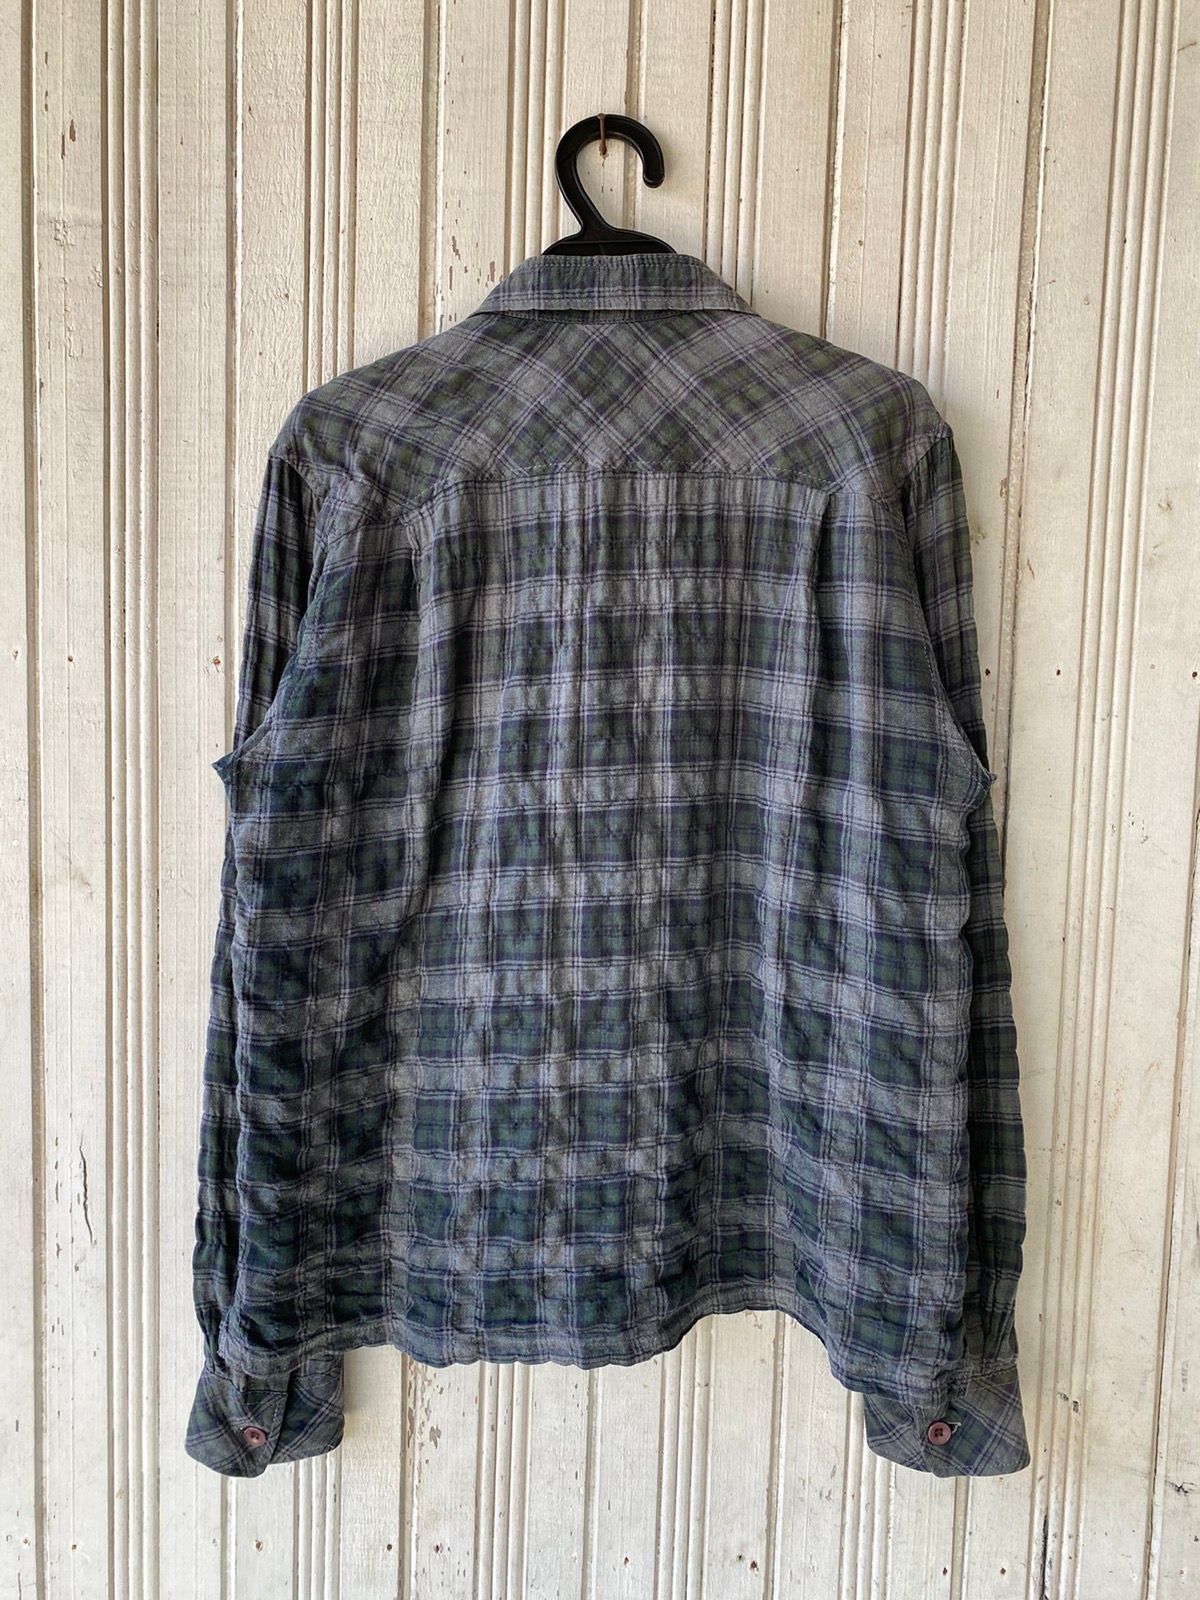 Vintage Vintage Final Home Flannel Shirt Button Ups Size US S / EU 44-46 / 1 - 2 Preview